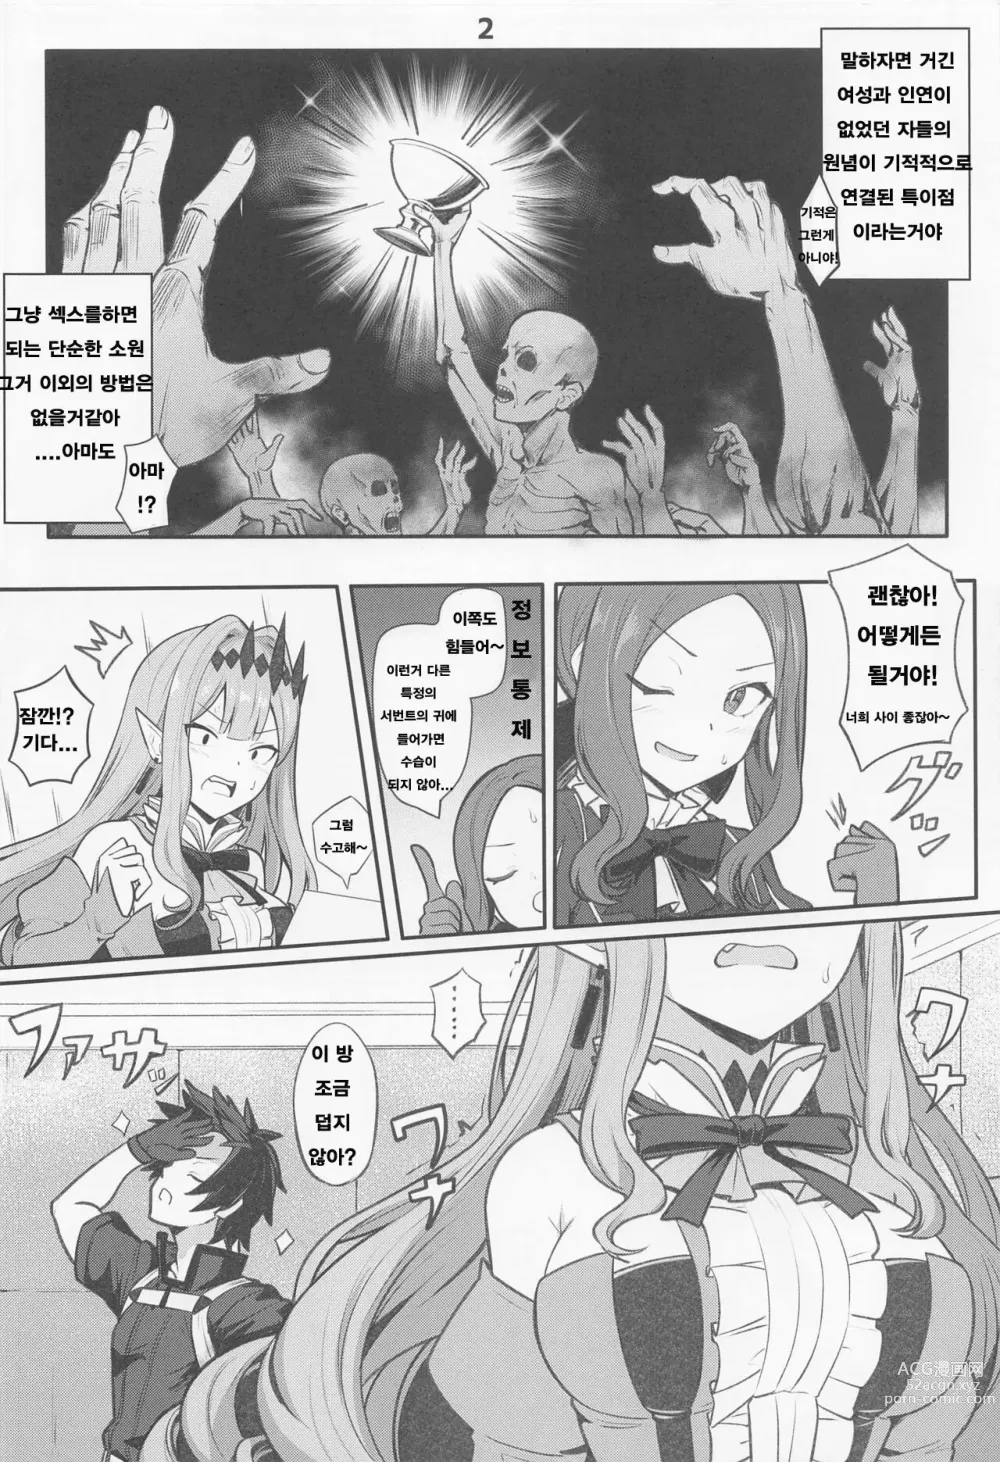 Page 3 of doujinshi 바반시와 ○스하지 않으면 나가지 못하는 방